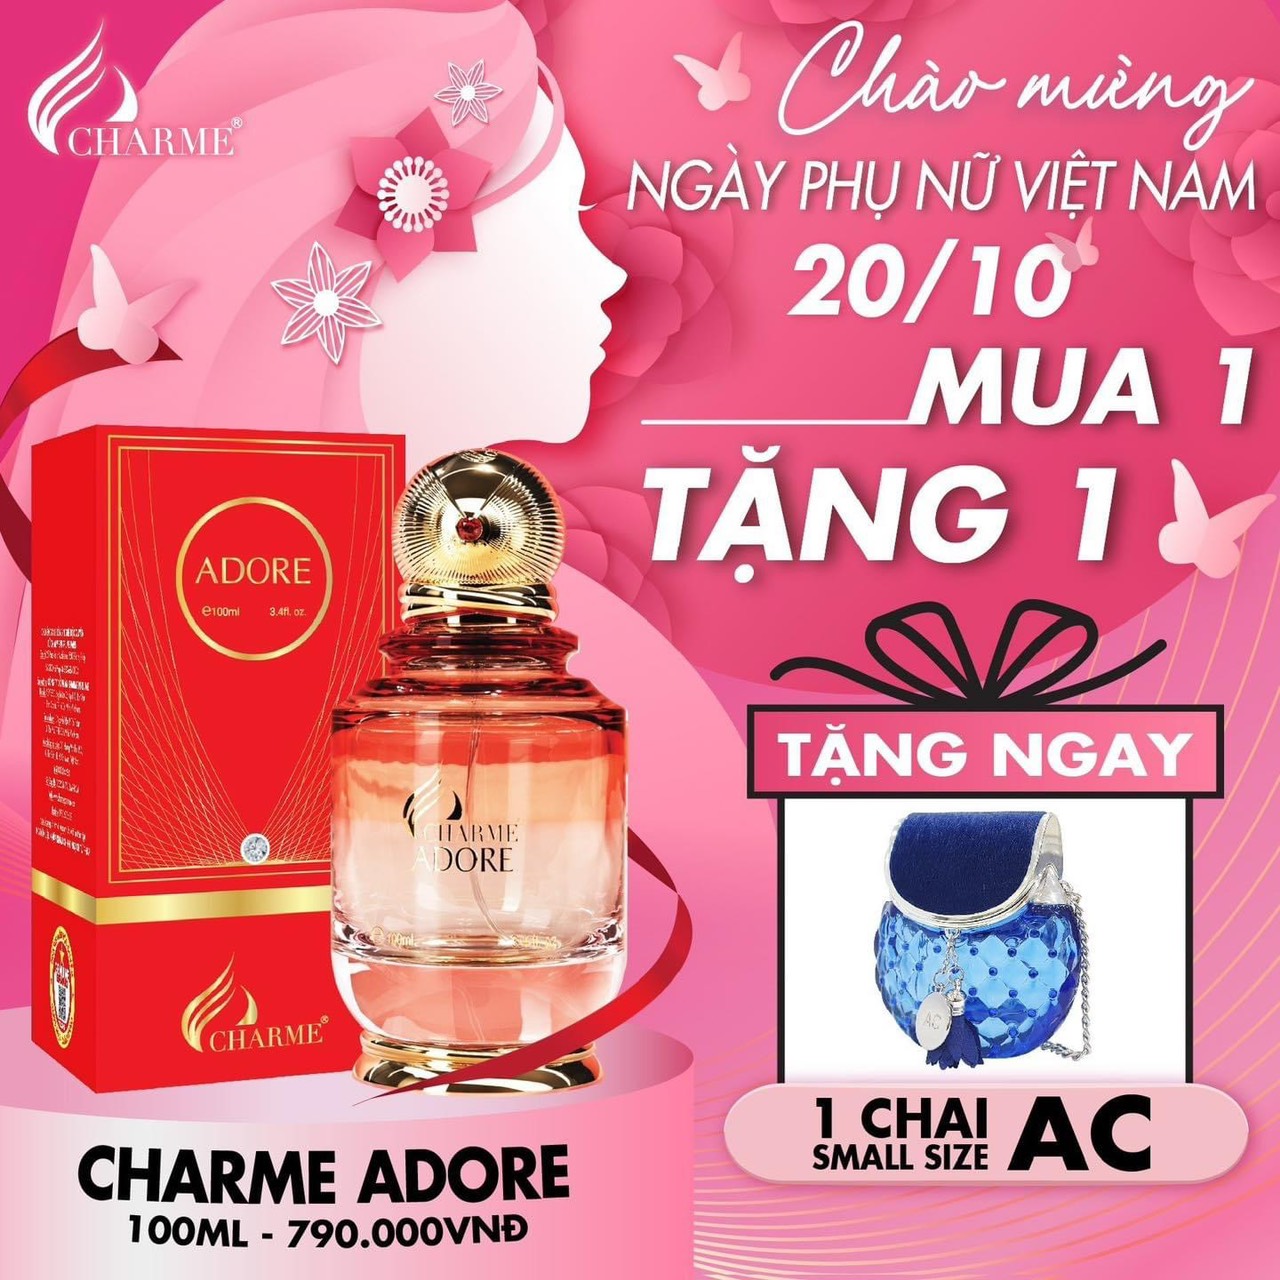 Deal thơm nhất năm lại thêm quà ngọt bão sale mừng ngày phụ nữ Việt Nam 20/10 chính thức đổ bộ tại Charme Perfume